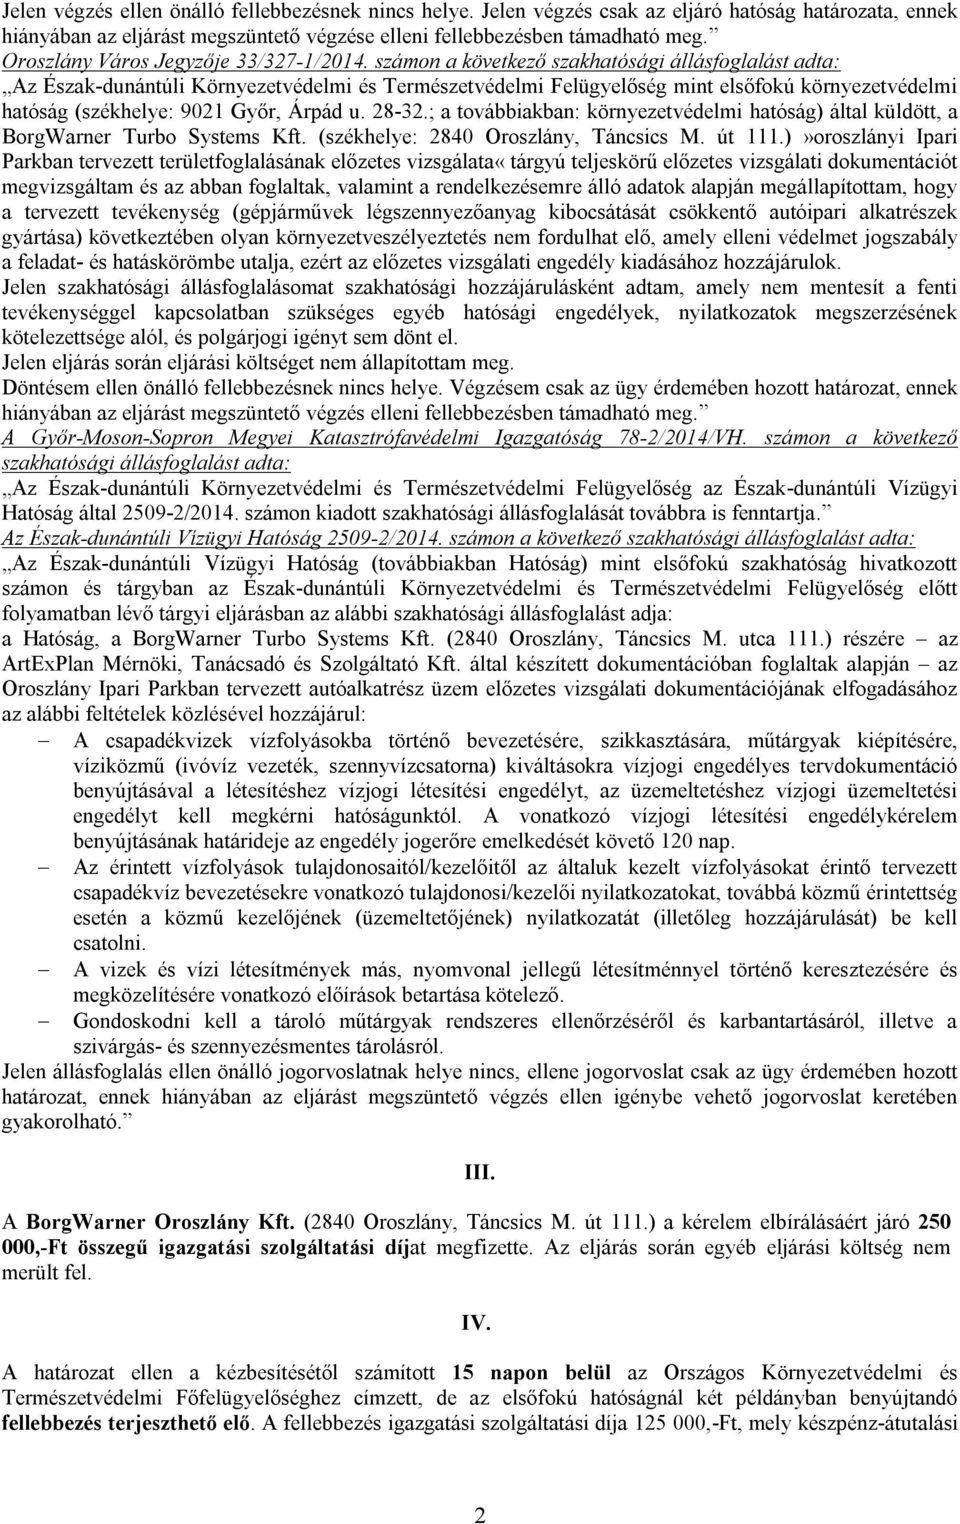 számon a következő szakhatósági állásfoglalást adta: Az Észak-dunántúli Környezetvédelmi és Természetvédelmi Felügyelőség mint elsőfokú környezetvédelmi hatóság (székhelye: 9021 Győr, Árpád u. 28-32.